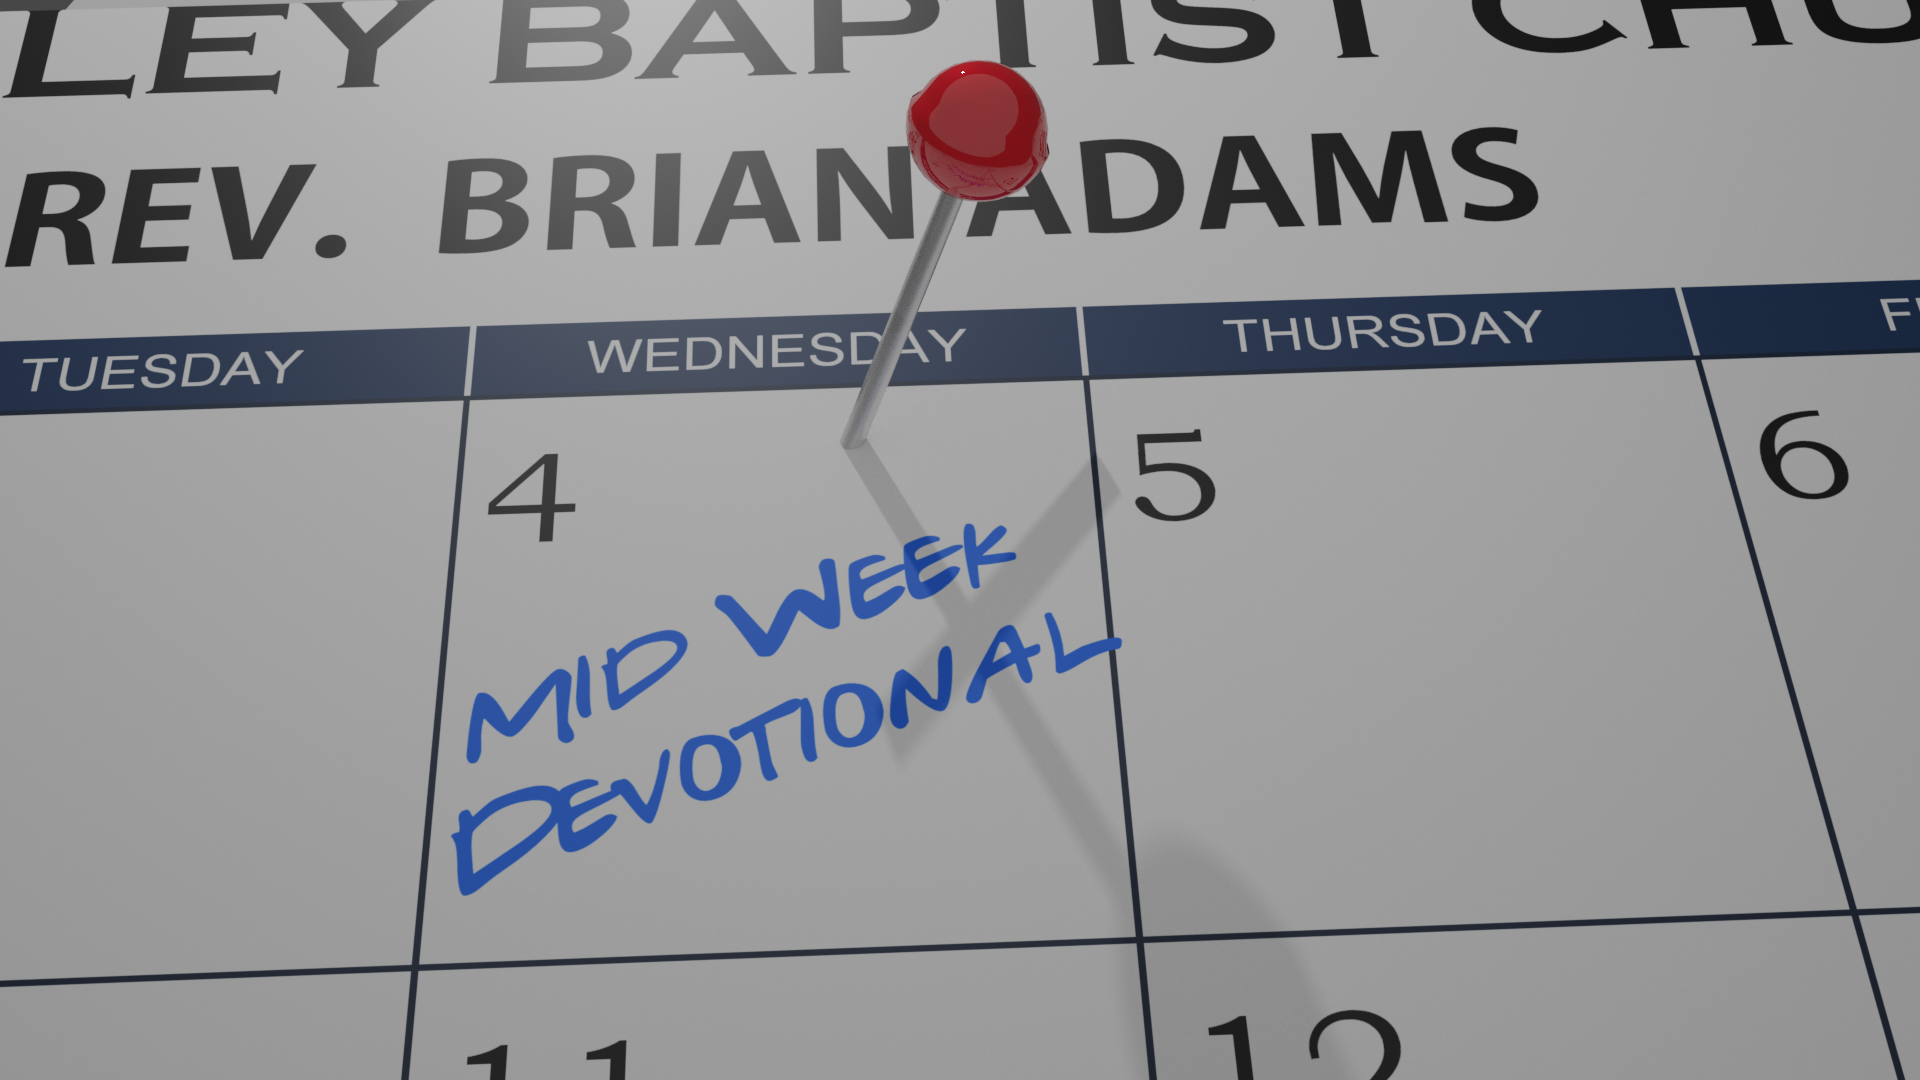 Mid-Week Devotional 10/14/20